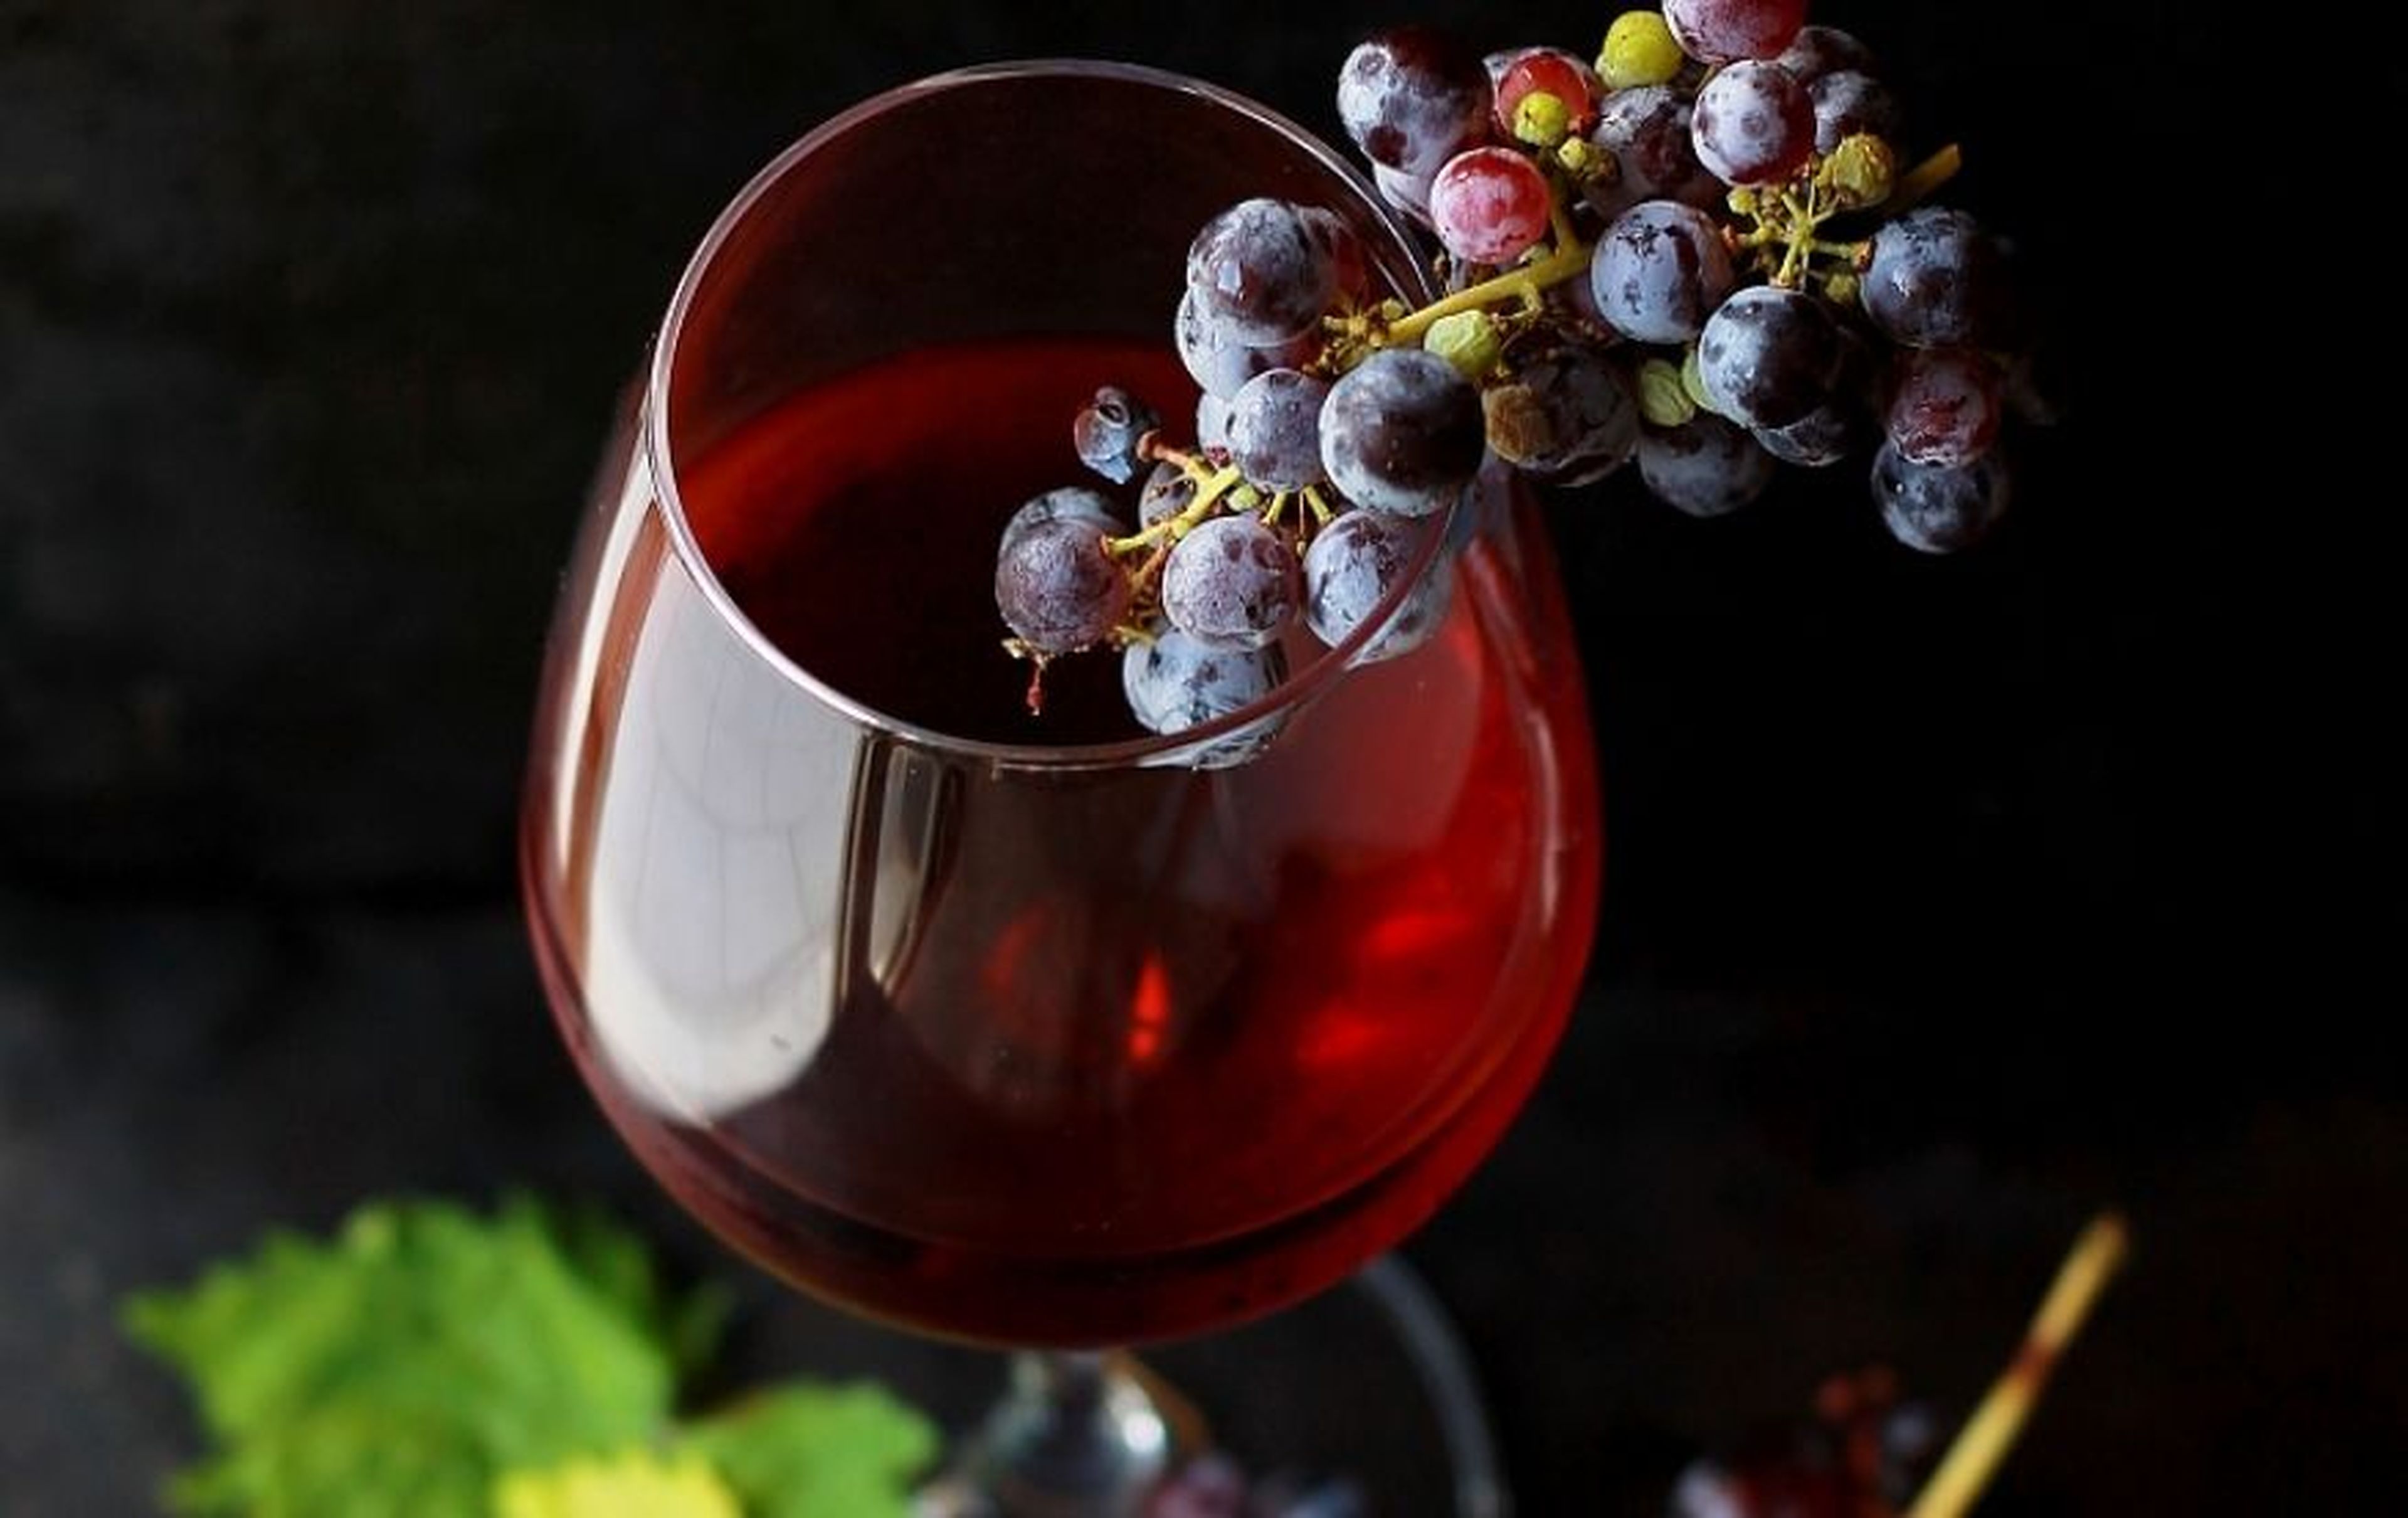 Un racimo de uvas sobre una copa de vino.